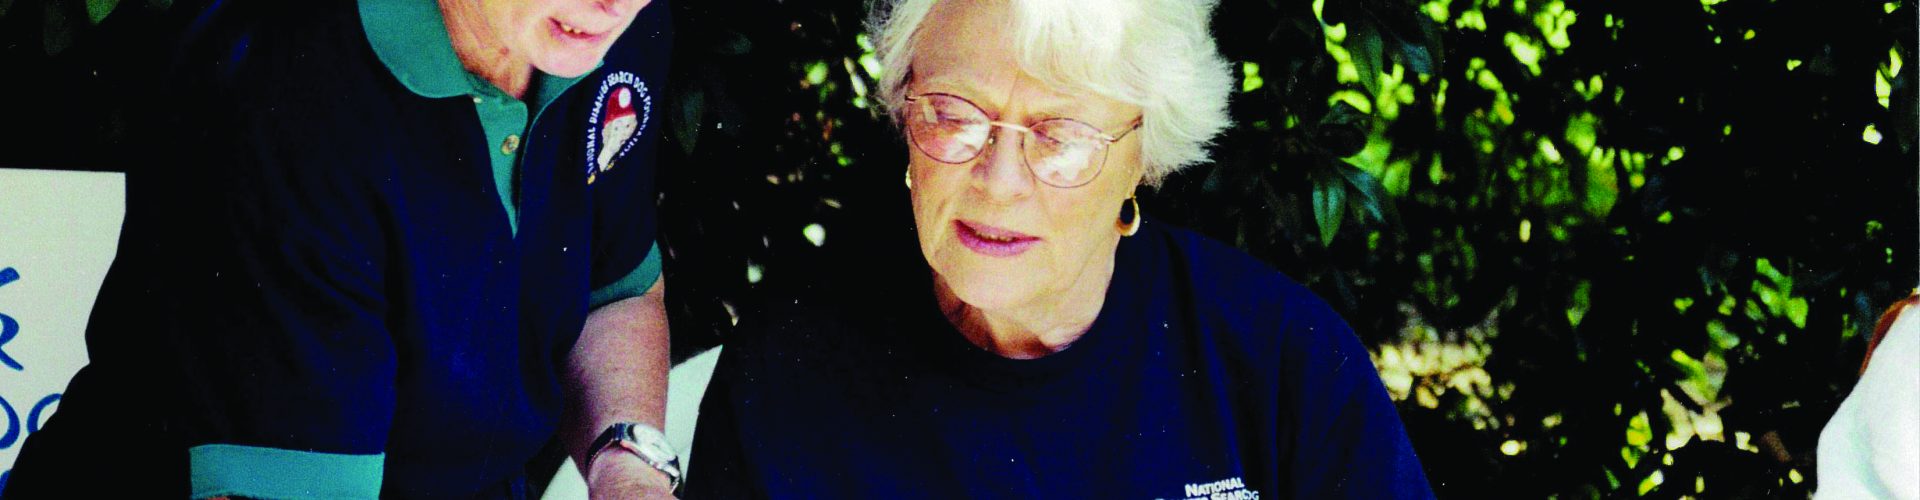 In memoriam: founding volunteer Rosemary Schumacher